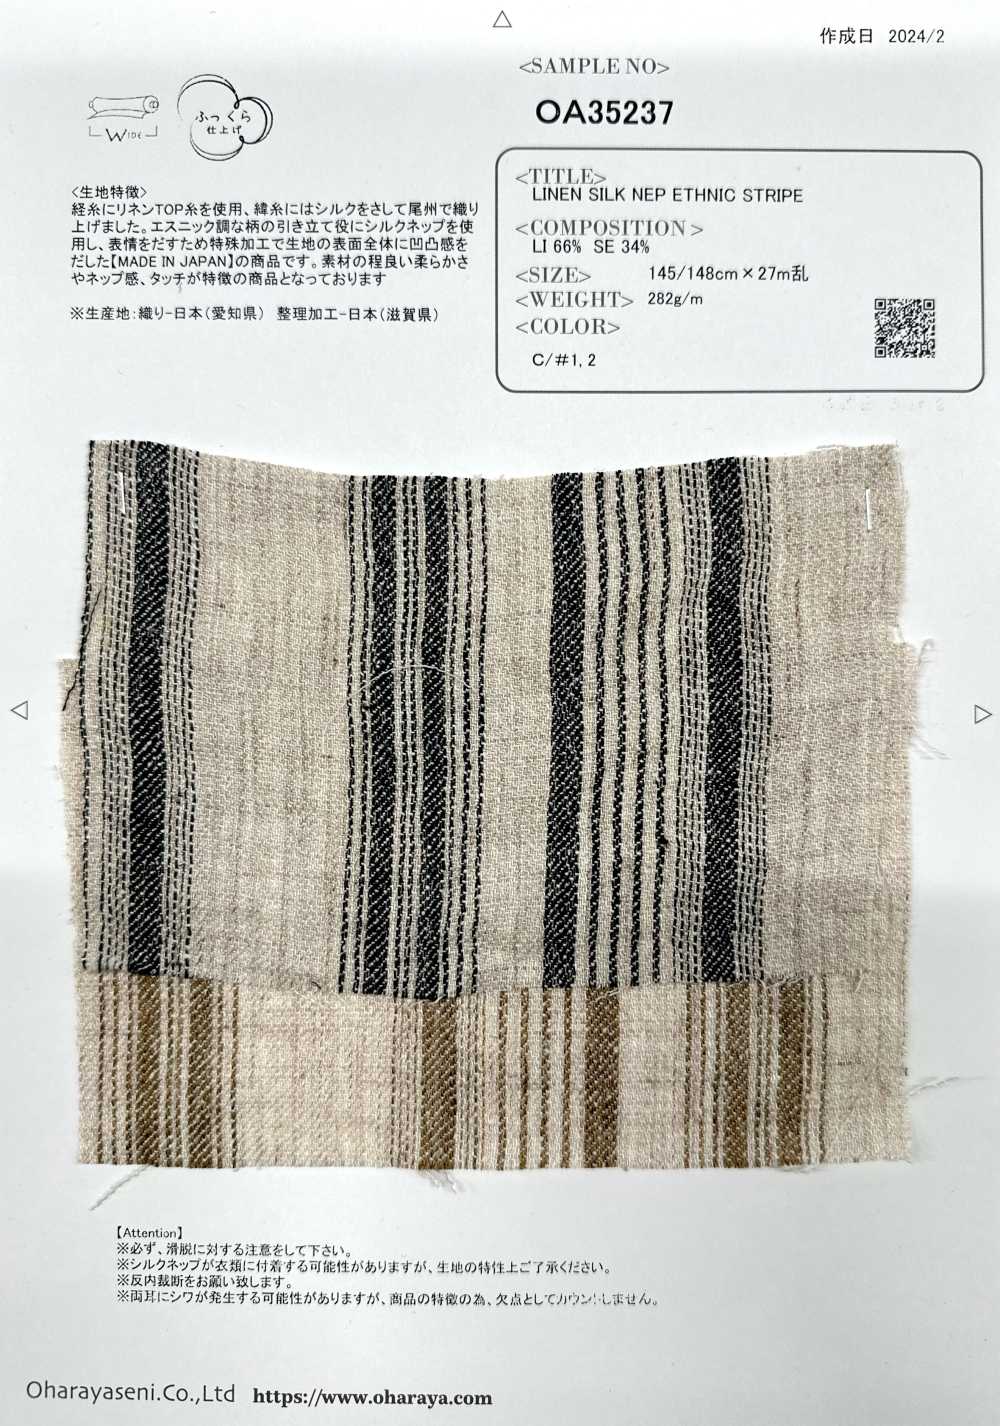 OA35237 Supima-Baumwolle Und Französisches Leinen × SEIDE 2/1 Super-Twill Mit Seidigem Finish[Textilgewebe] Oharayaseni